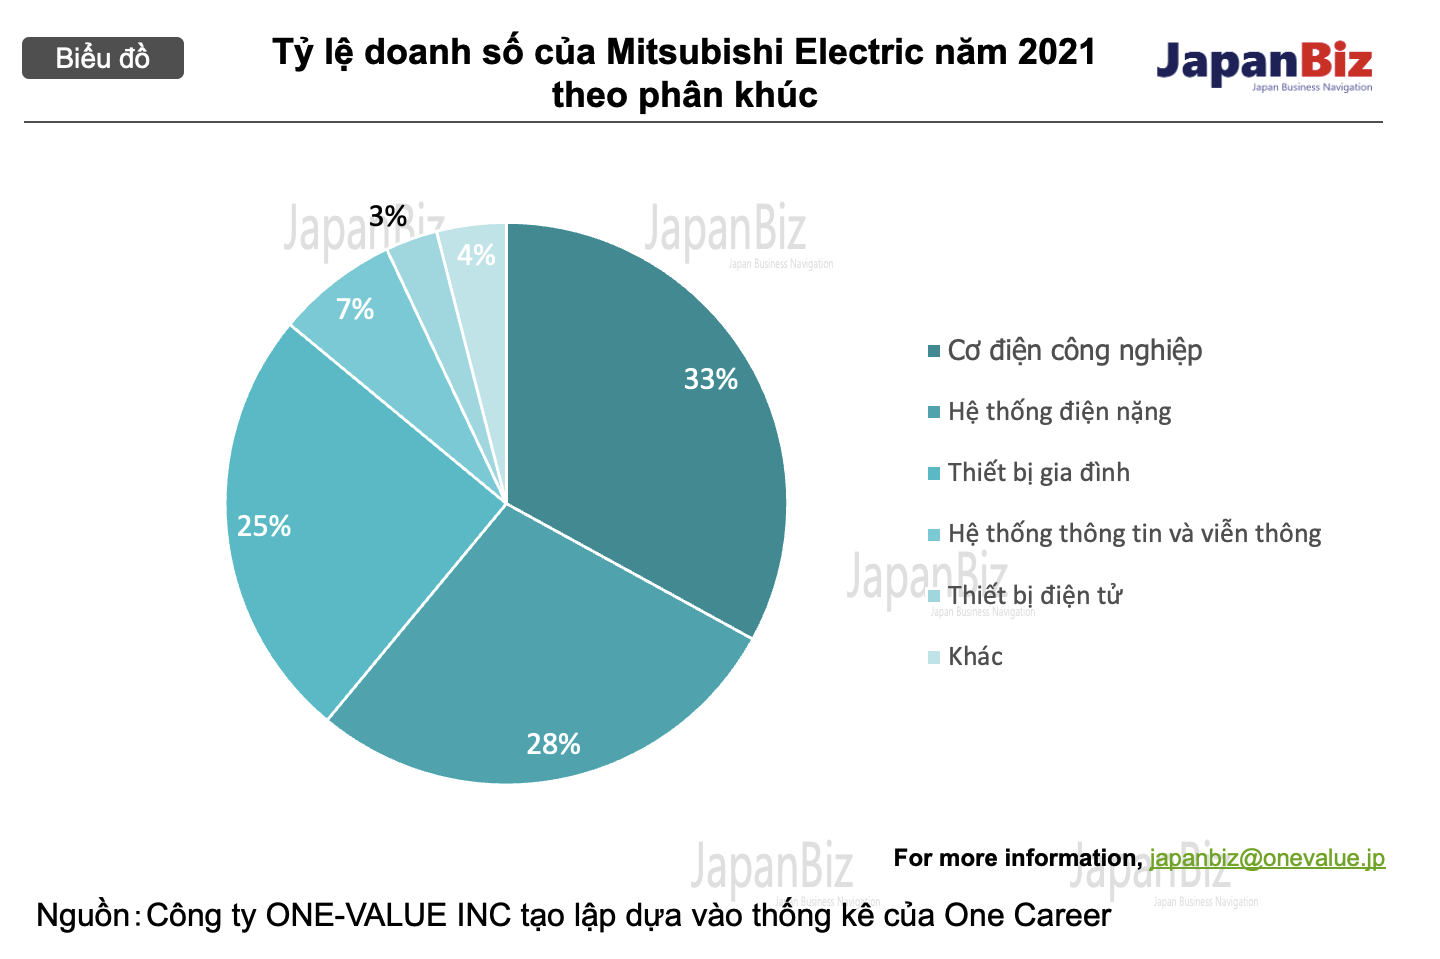 Tỷ lệ doanh số của Mitsubishi Electric năm 2021 theo phân khúc